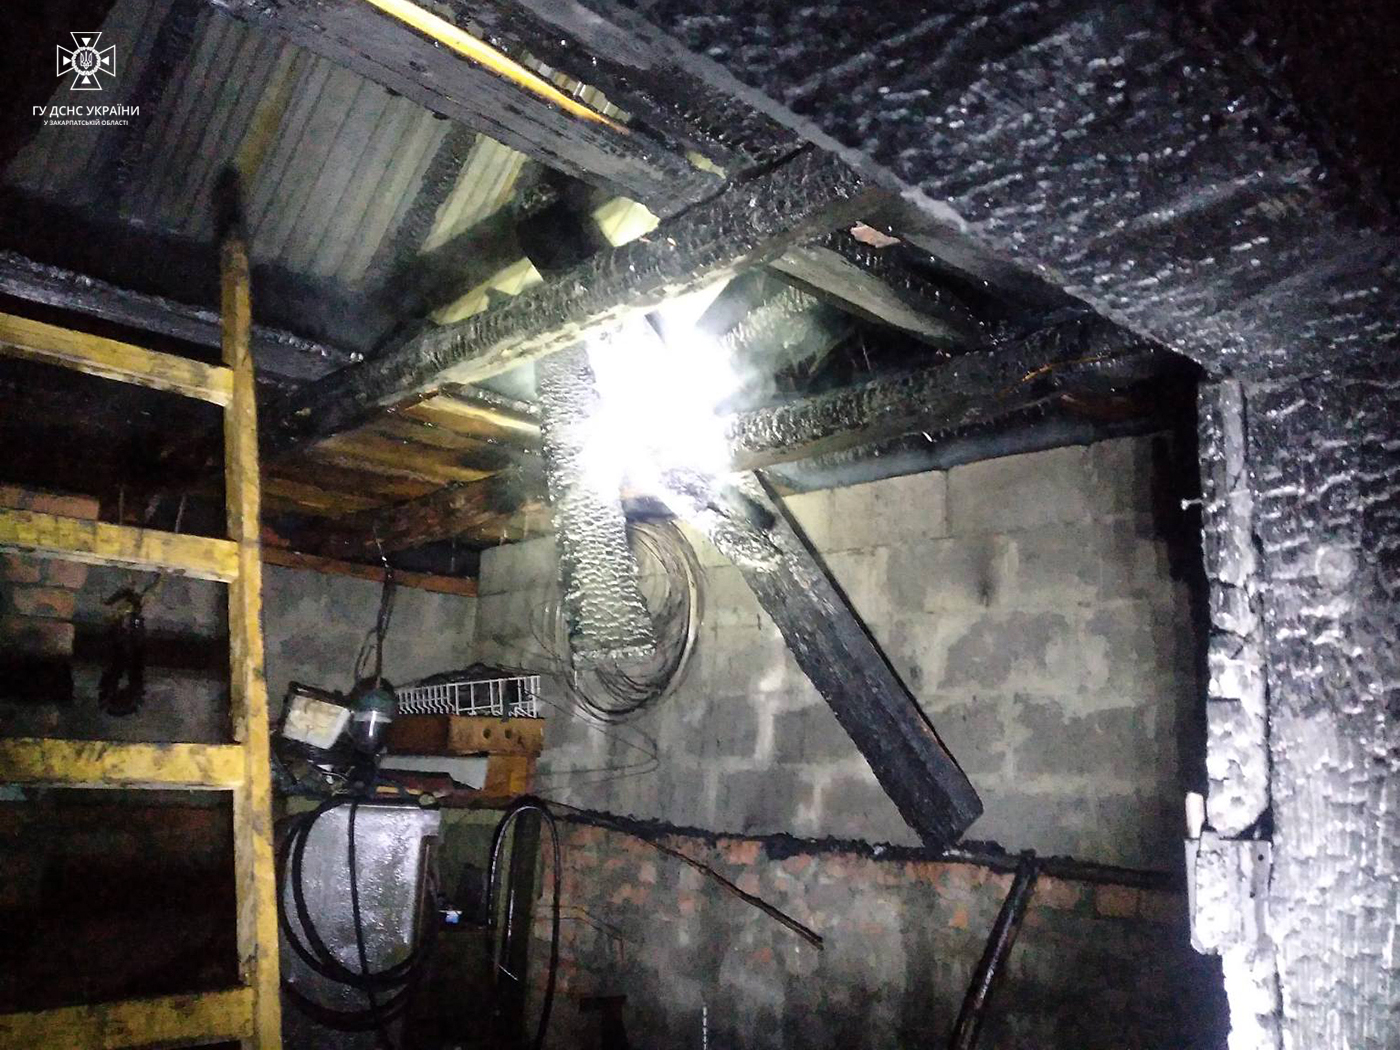 У Коритнянах на Ужгородщині через сало в коптильні ледь не згоріла господарська будівля (ФОТО)